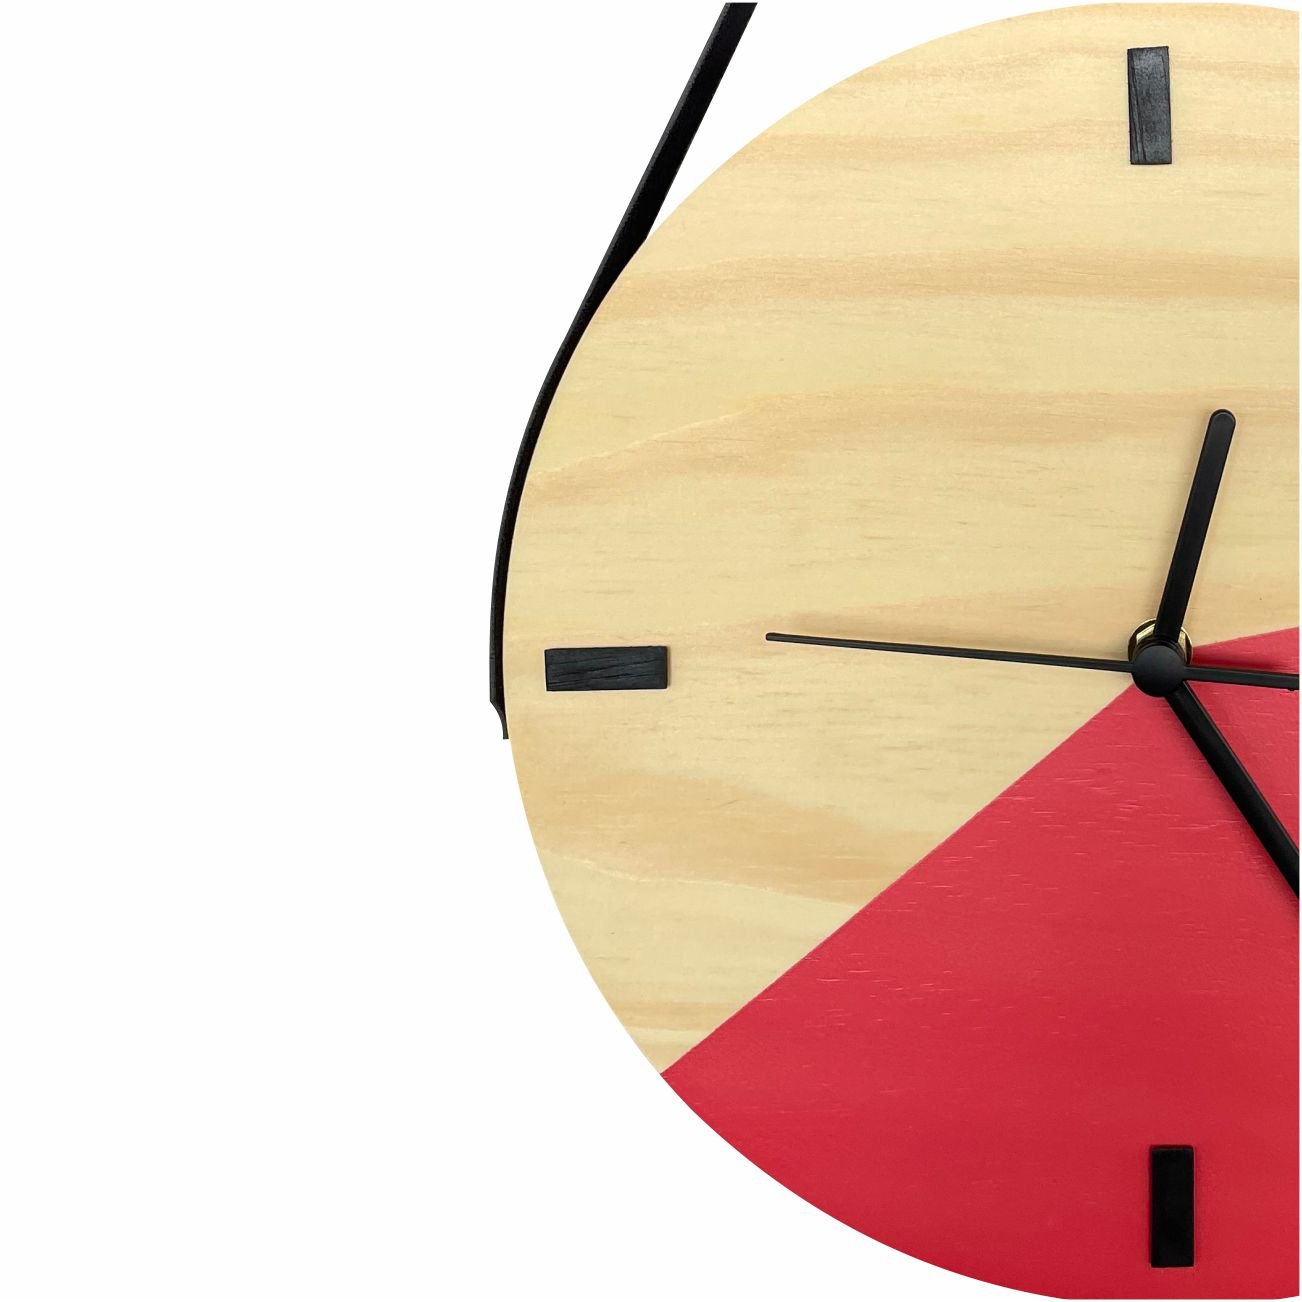 Relógio Decorativo Edward Clock Escandinavo Goiaba com Alça - 2